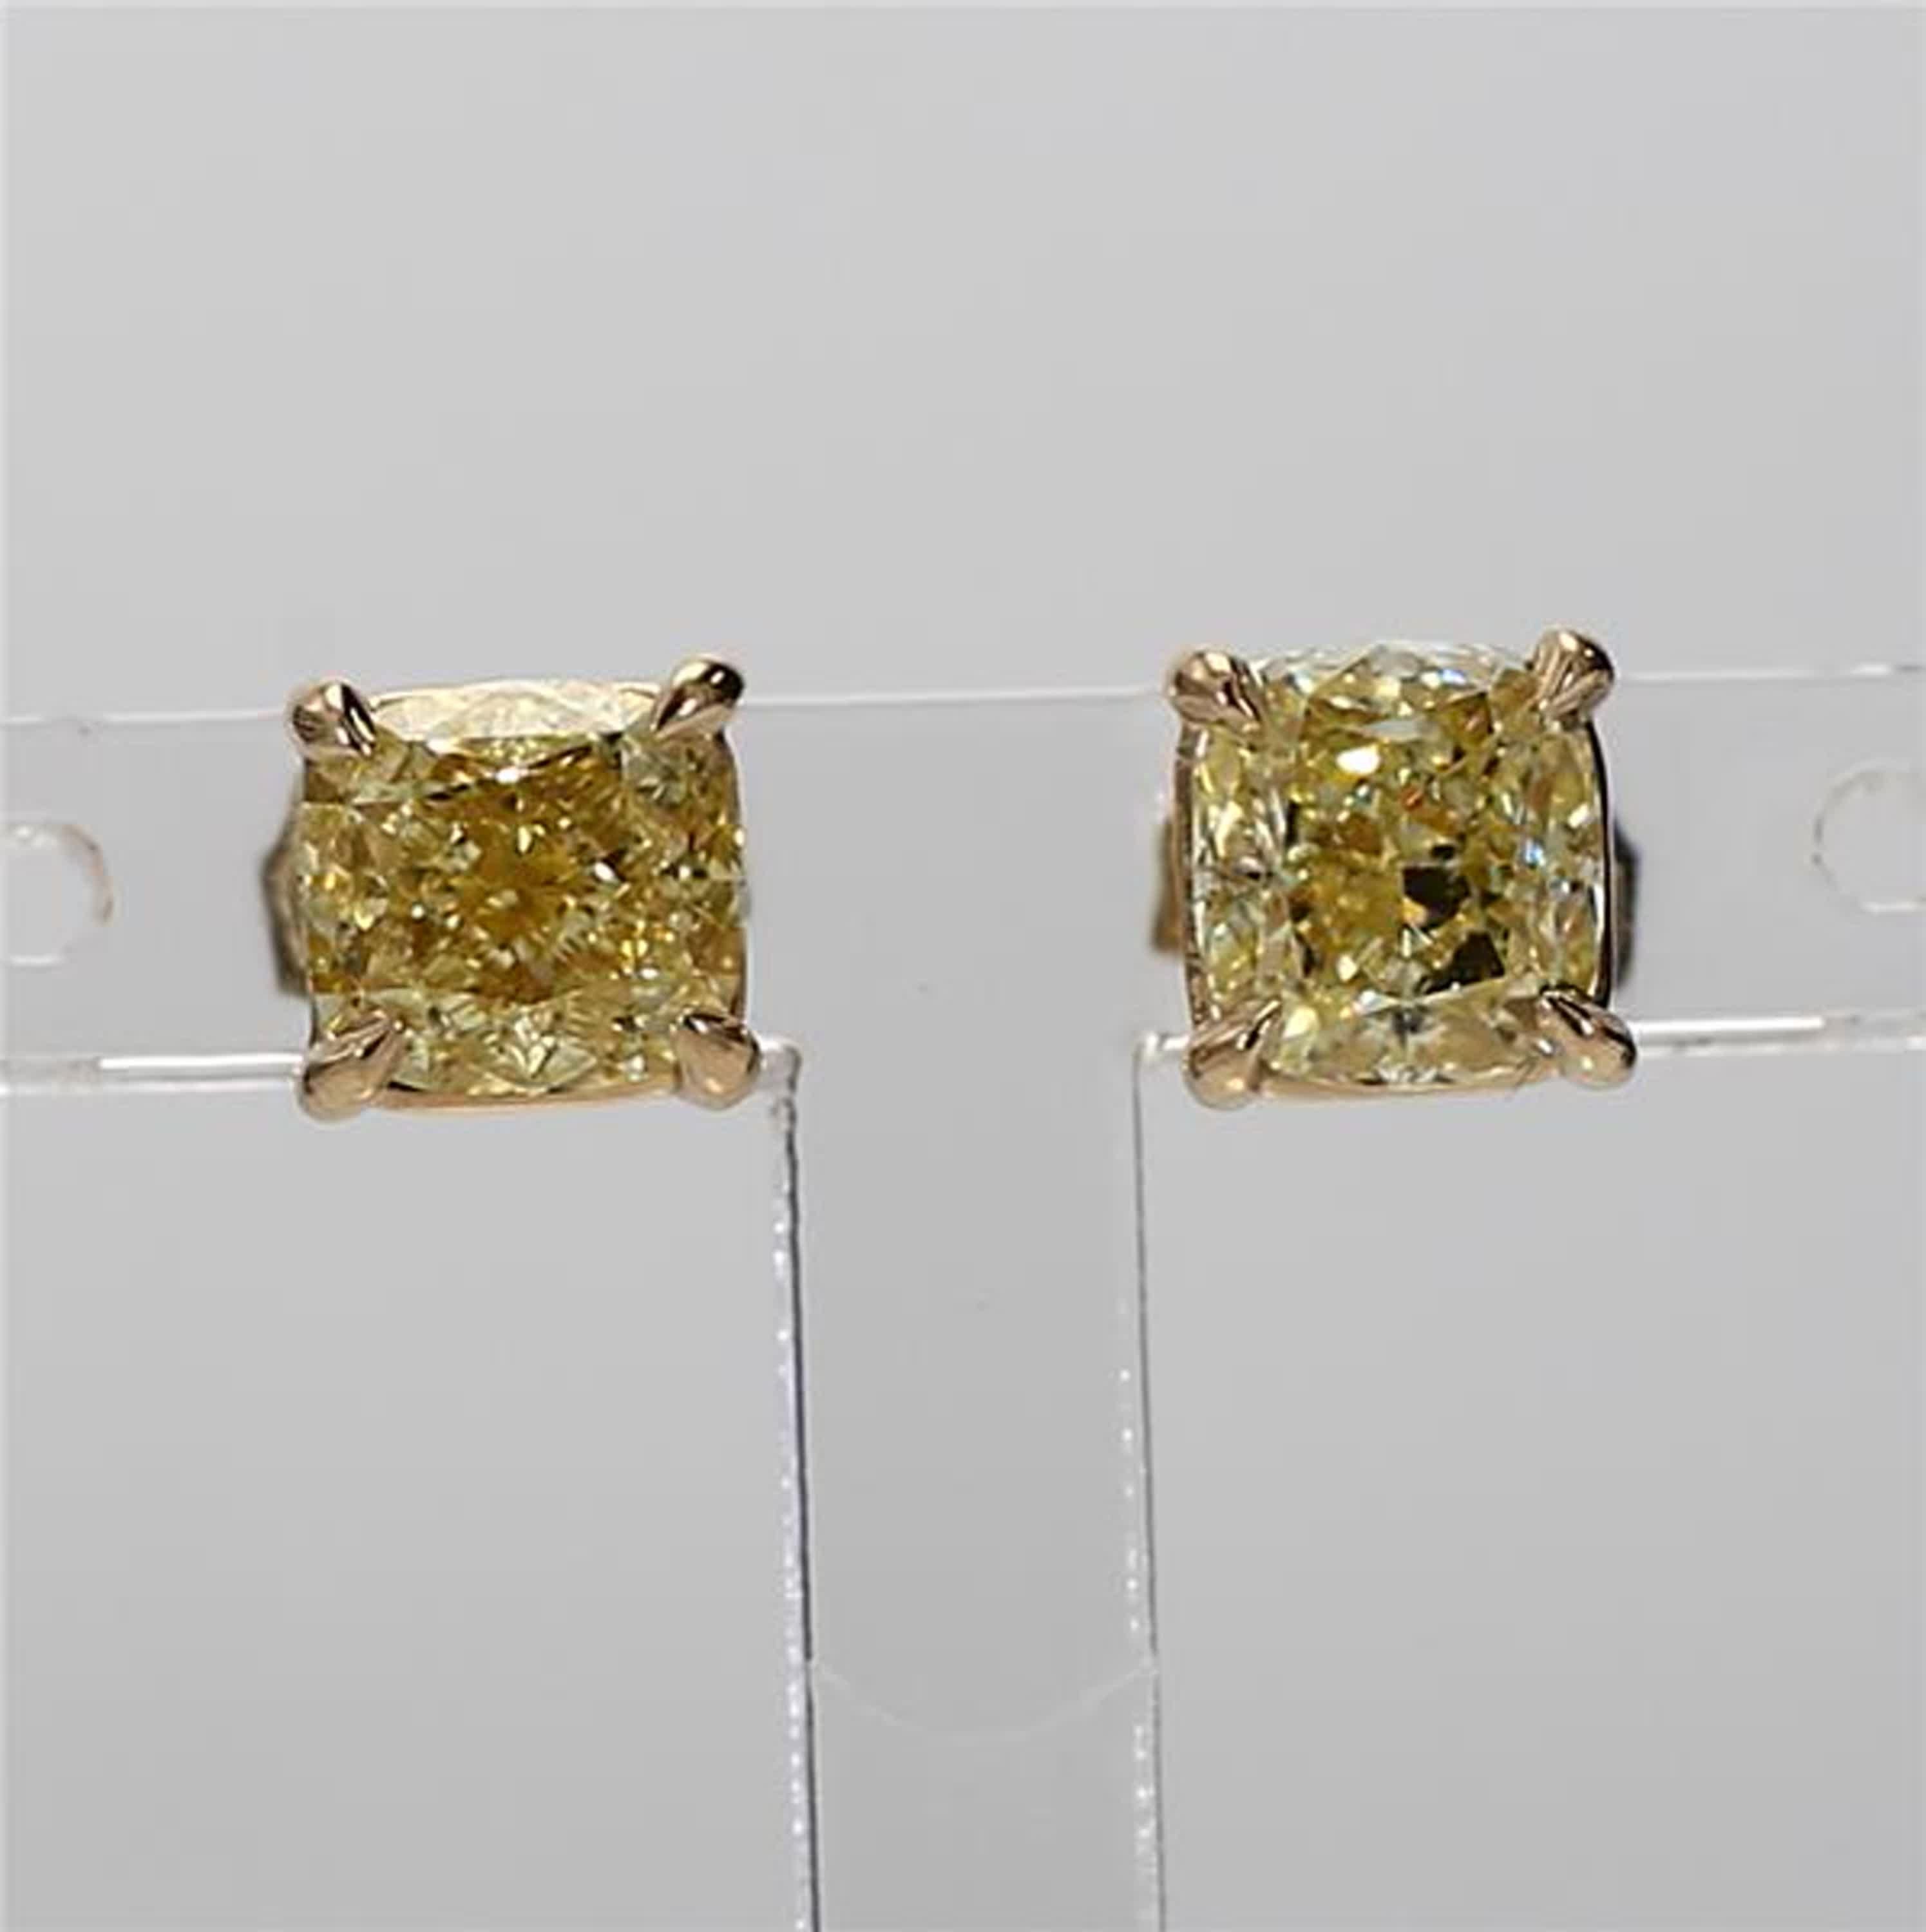 Les boucles d'oreilles classiques en diamant certifié GIA de Raregemworld. Monté dans une belle monture en or jaune 14 carats avec des diamants jaunes naturels de taille coussin. Ces boucles d'oreilles sont garanties pour impressionner et améliorer